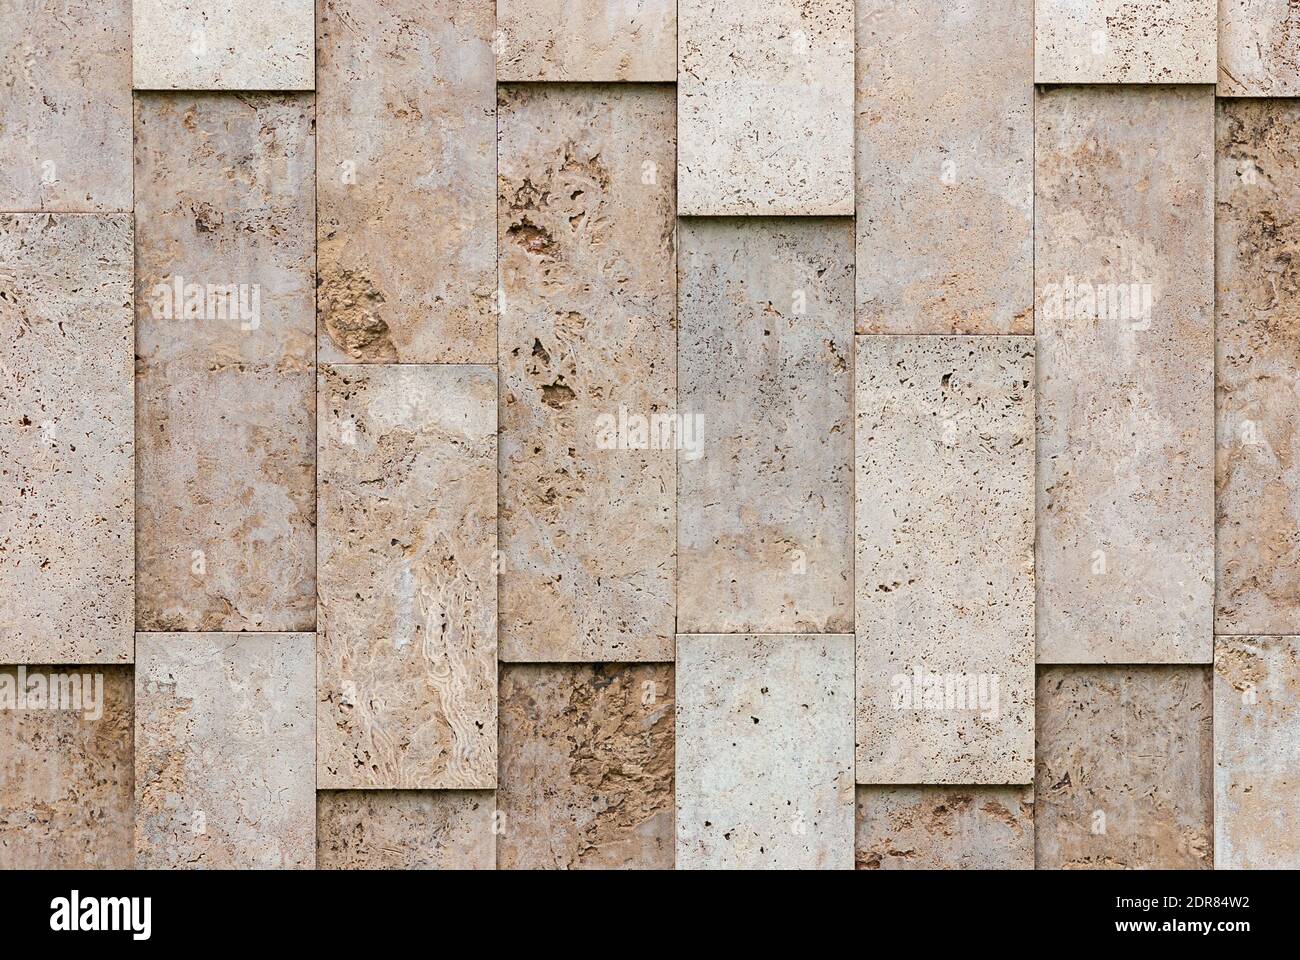 mur beige-gris de blocs de pierre naturels texturés, disposition irrégulière Banque D'Images